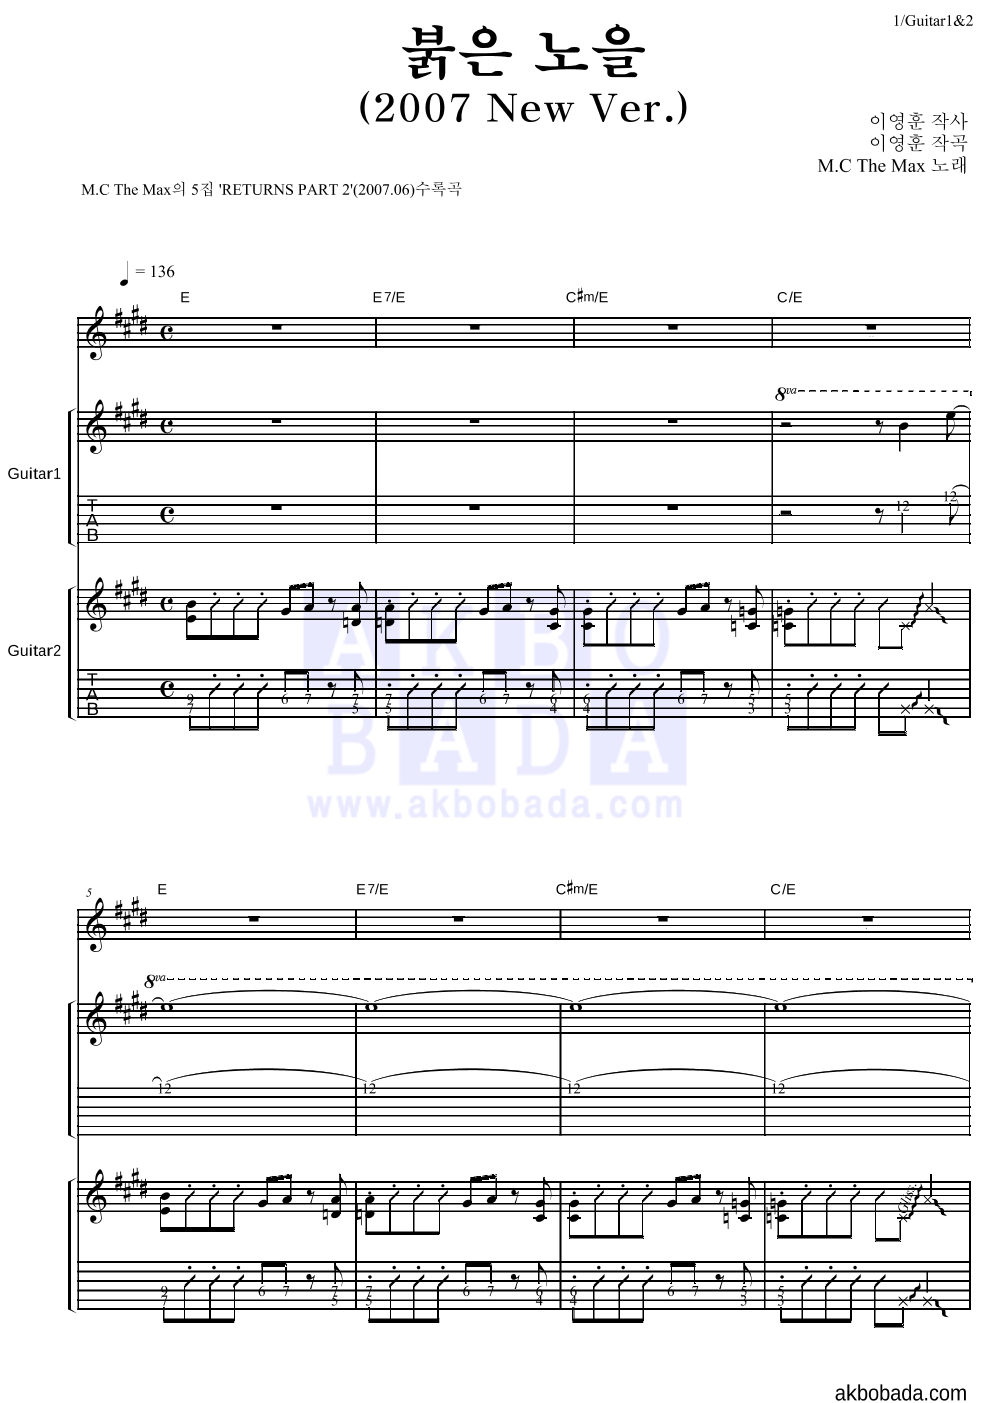 엠씨더맥스 - 붉은 노을 (2007 New Ver.) 기타1,2 악보 